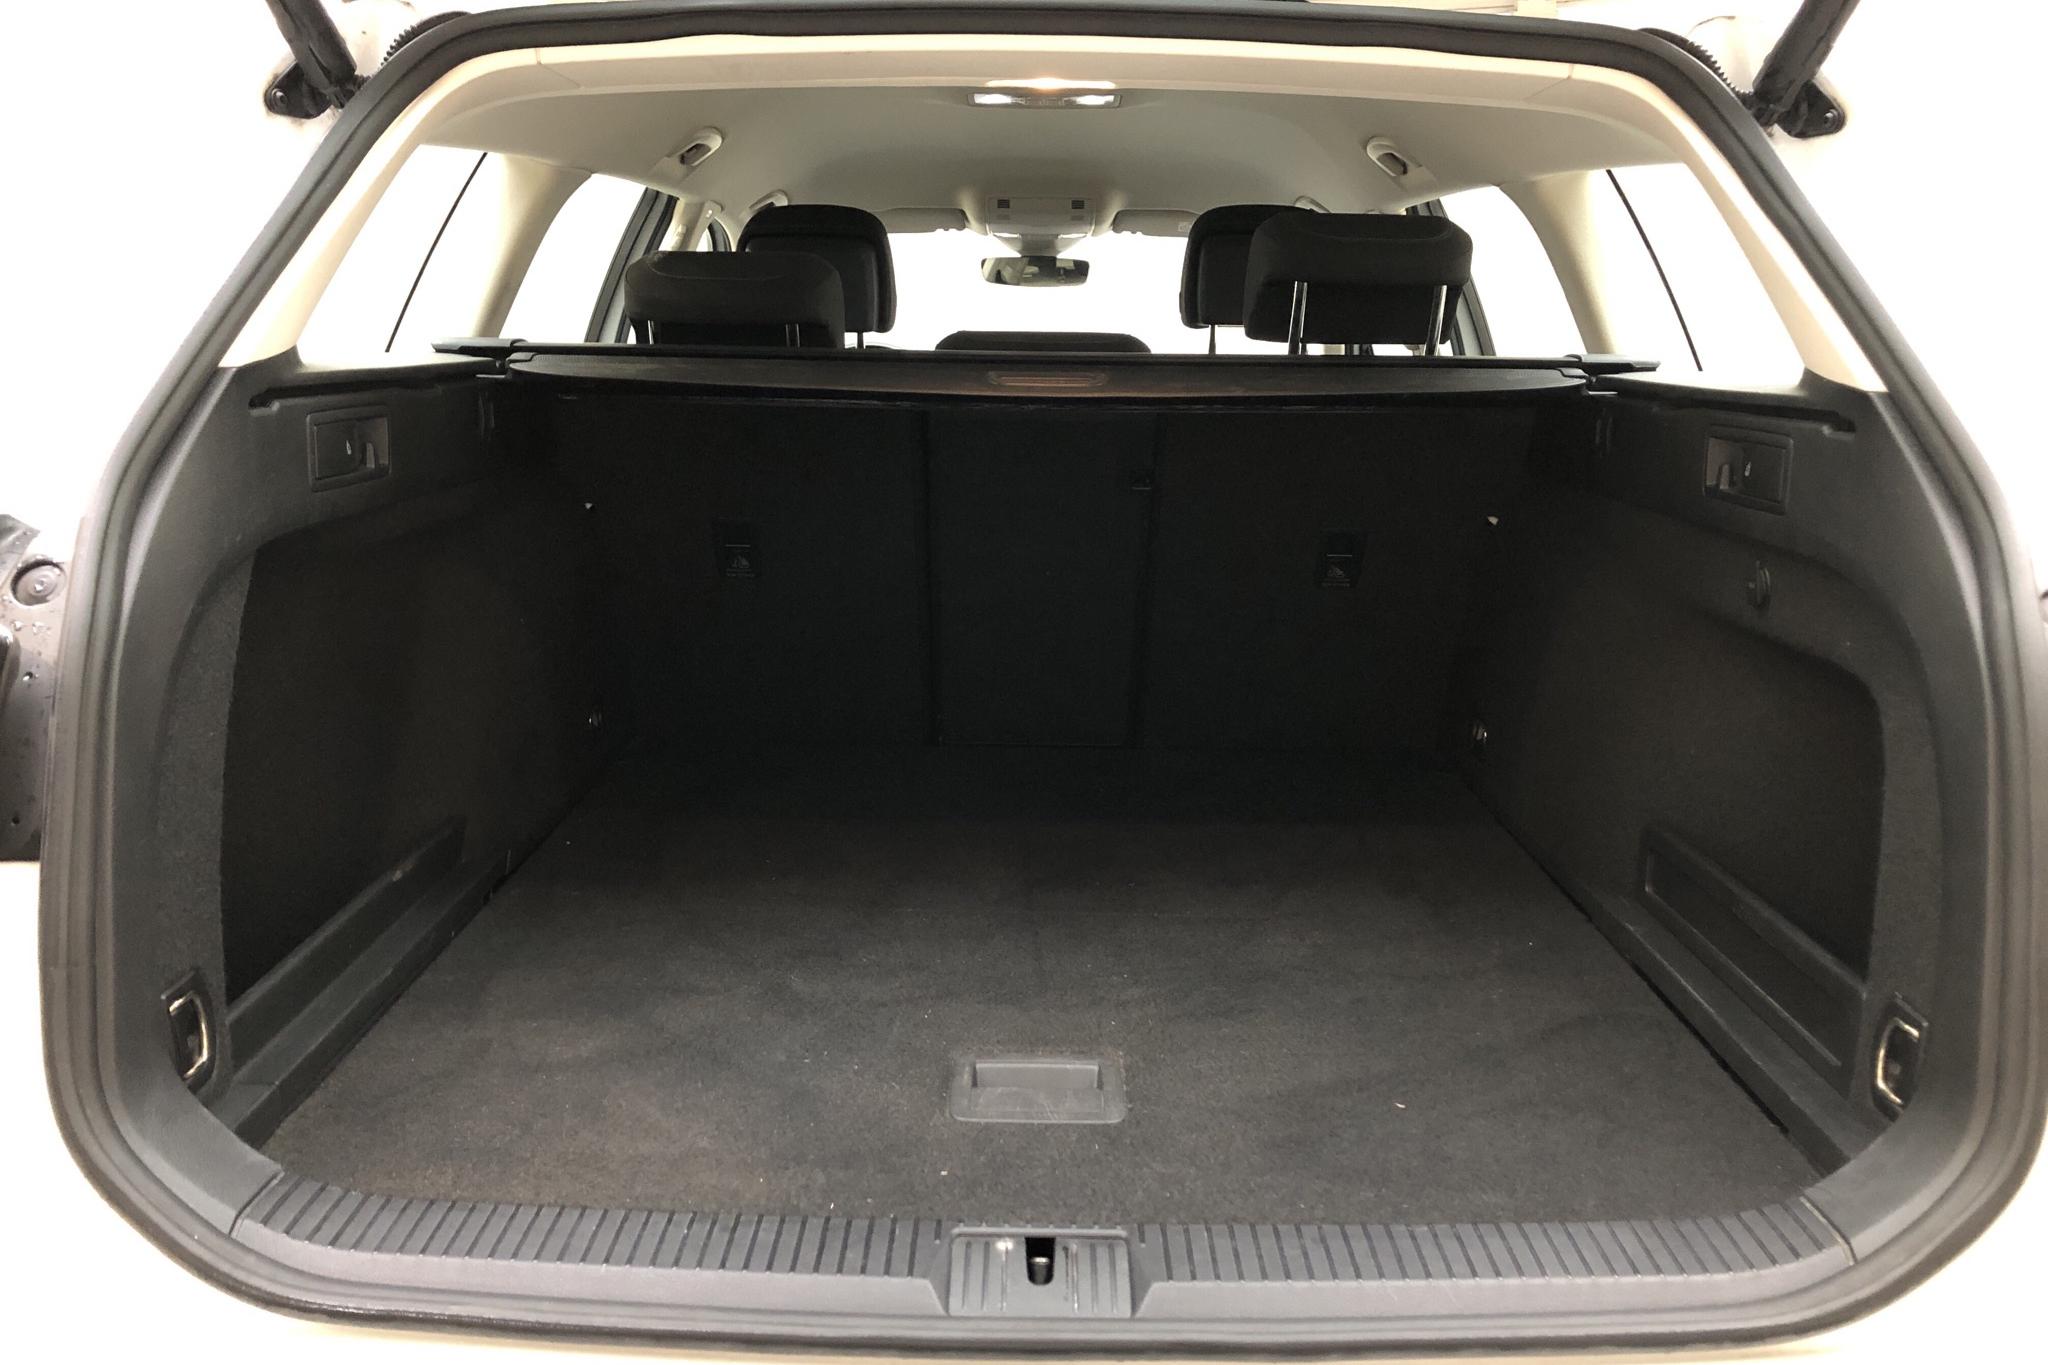 VW Passat 1.4 TSI Sportscombi (150hk) - 7 413 mil - Automat - vit - 2018